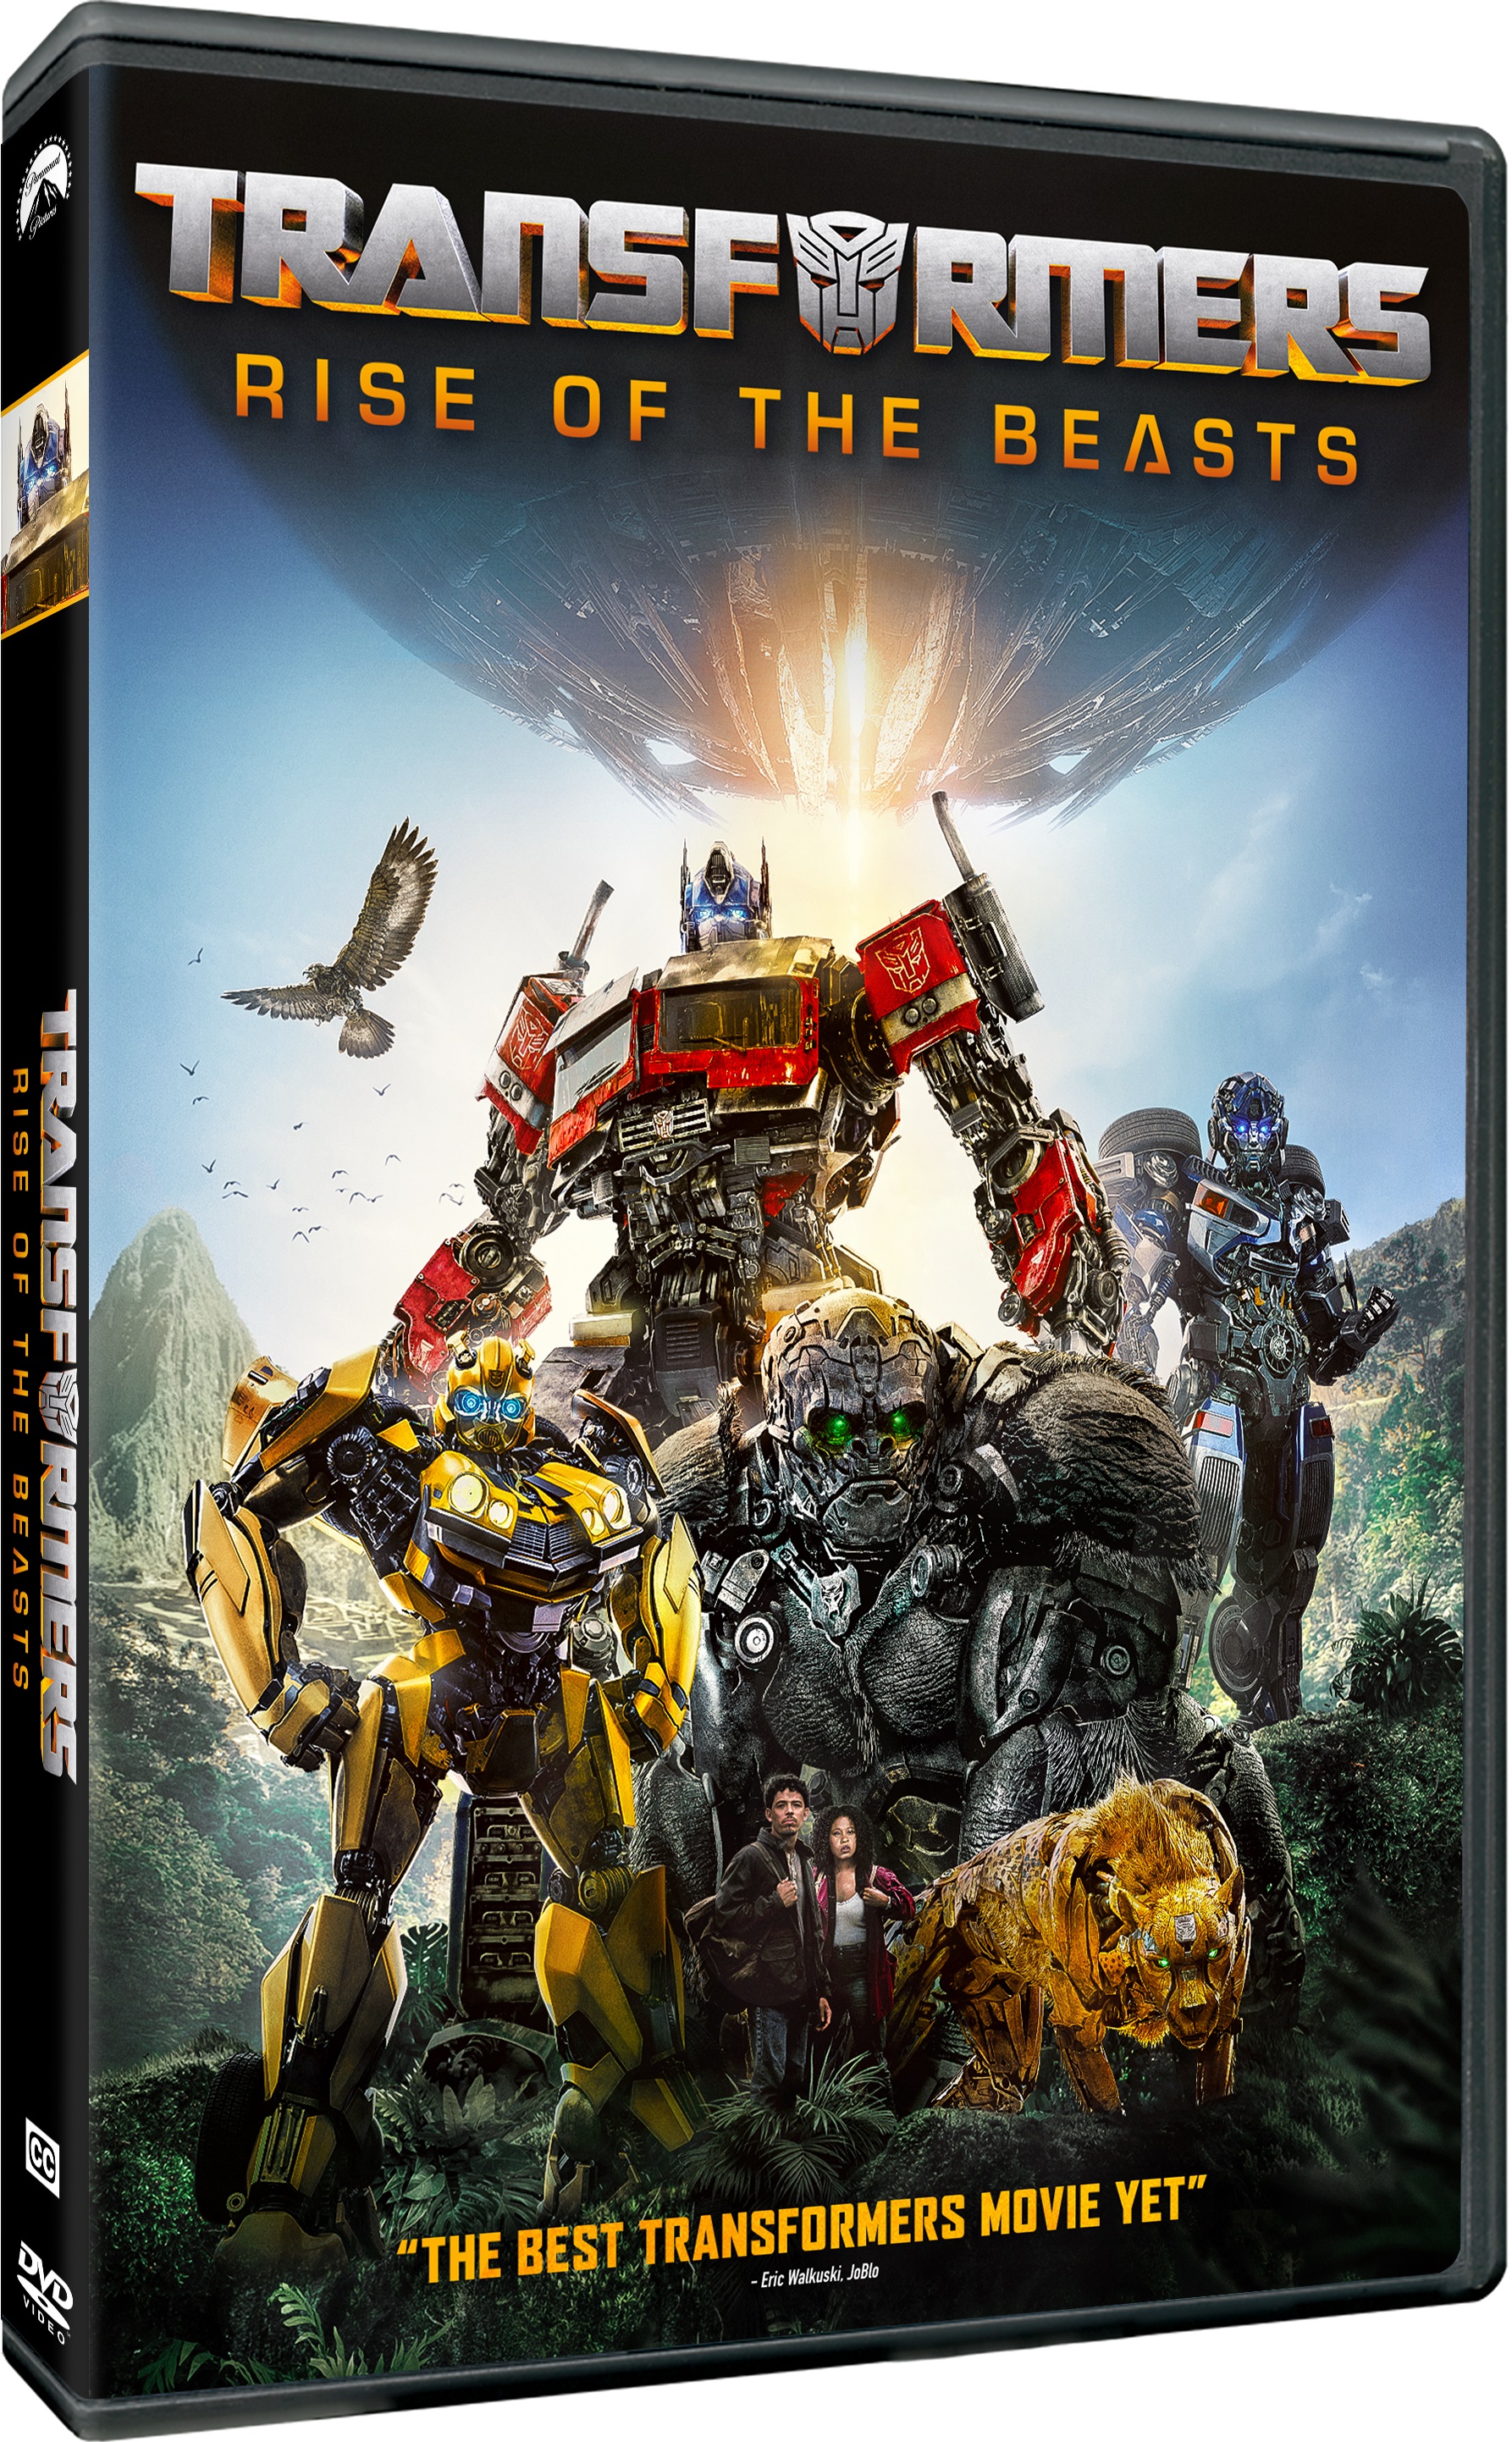 Coleção Dvds Filmes - Transformers